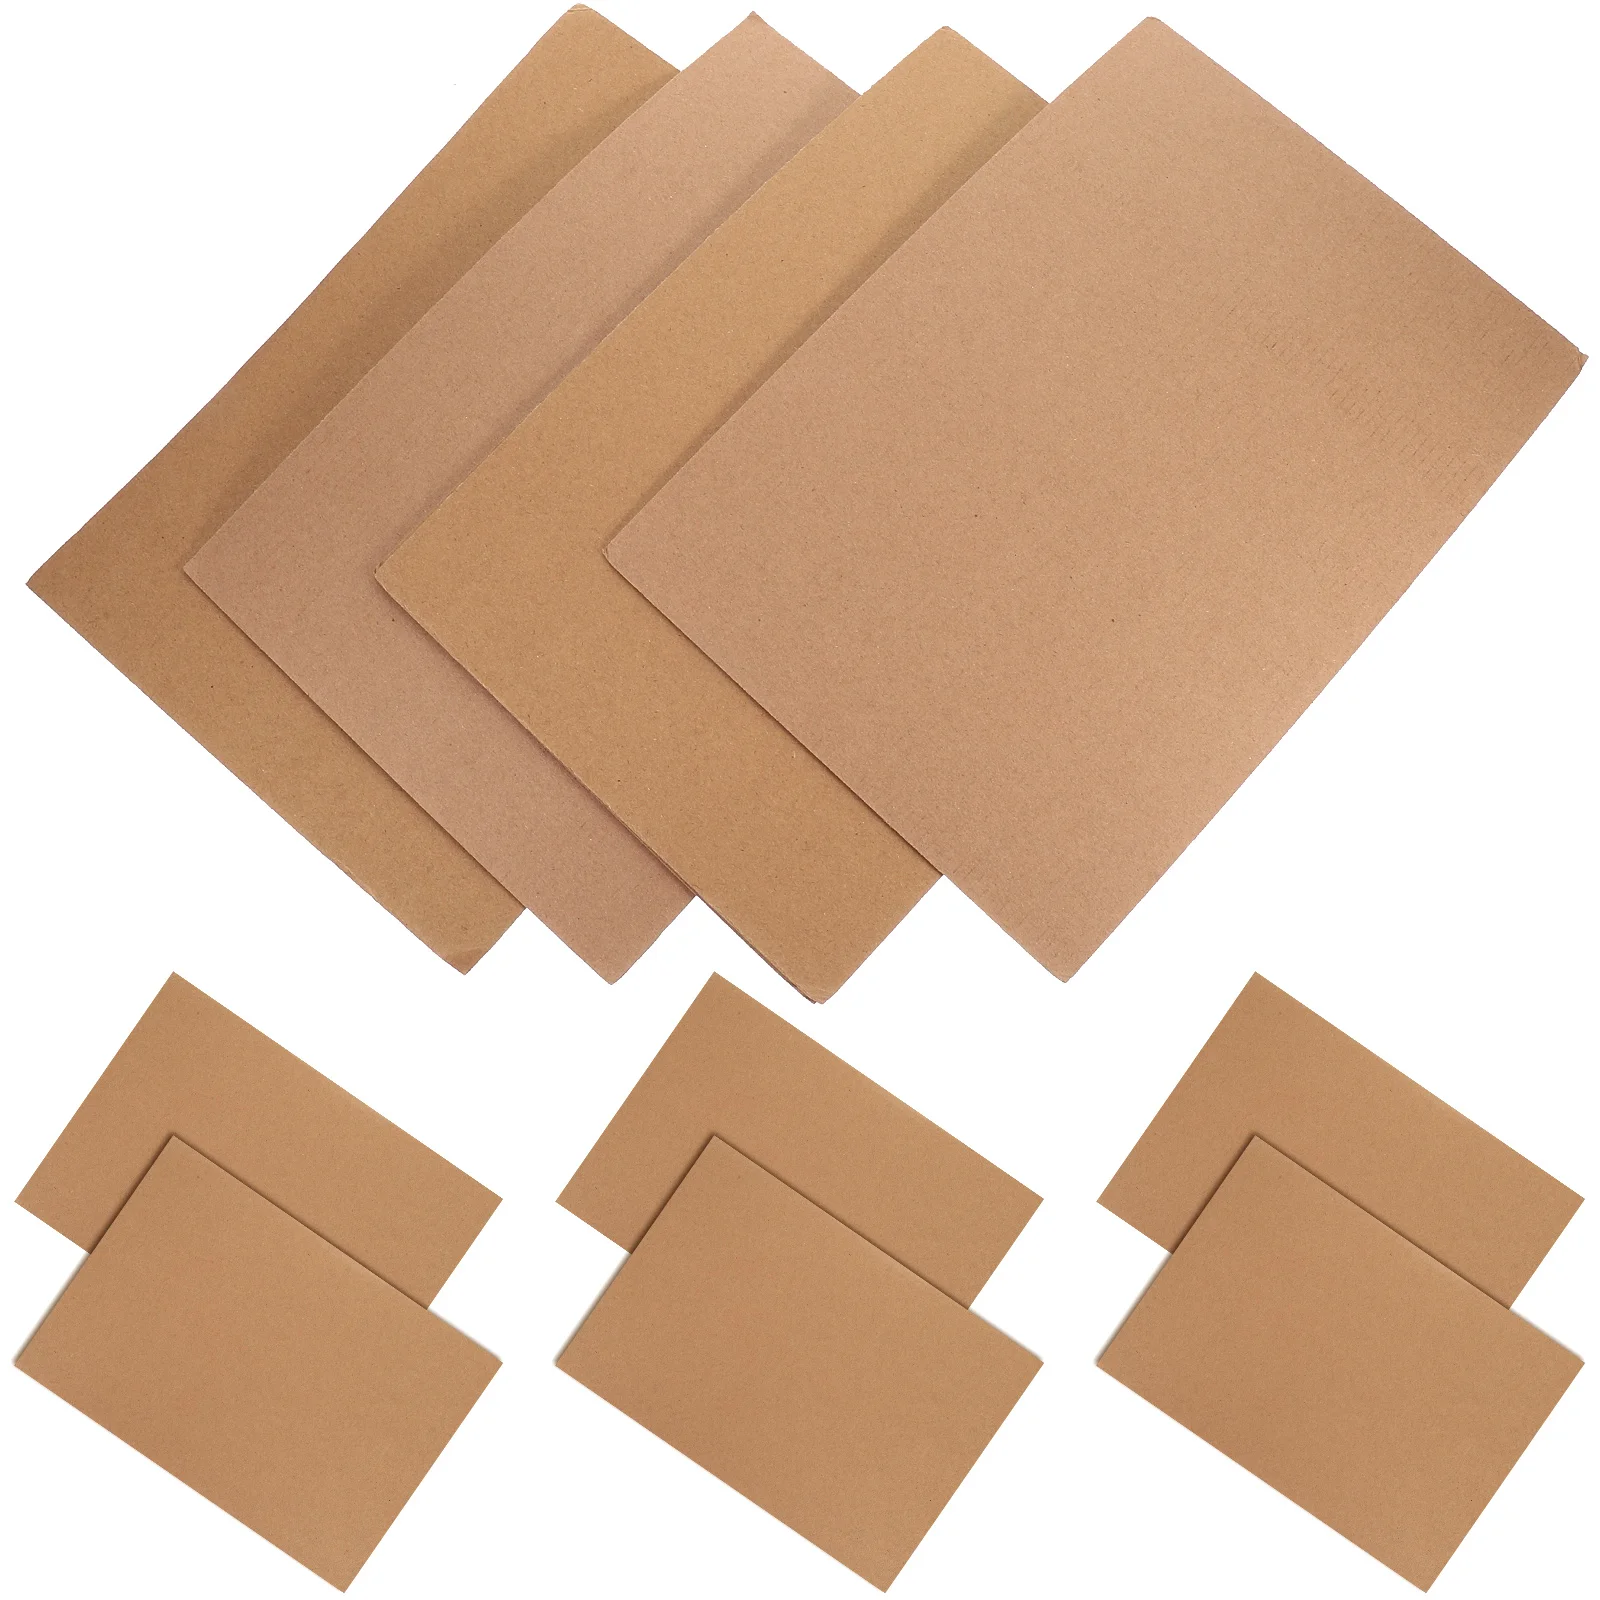 

10 листов гофрированного картона упаковка защитный гофрированный картона доставка коробка доставка упаковочная коробка